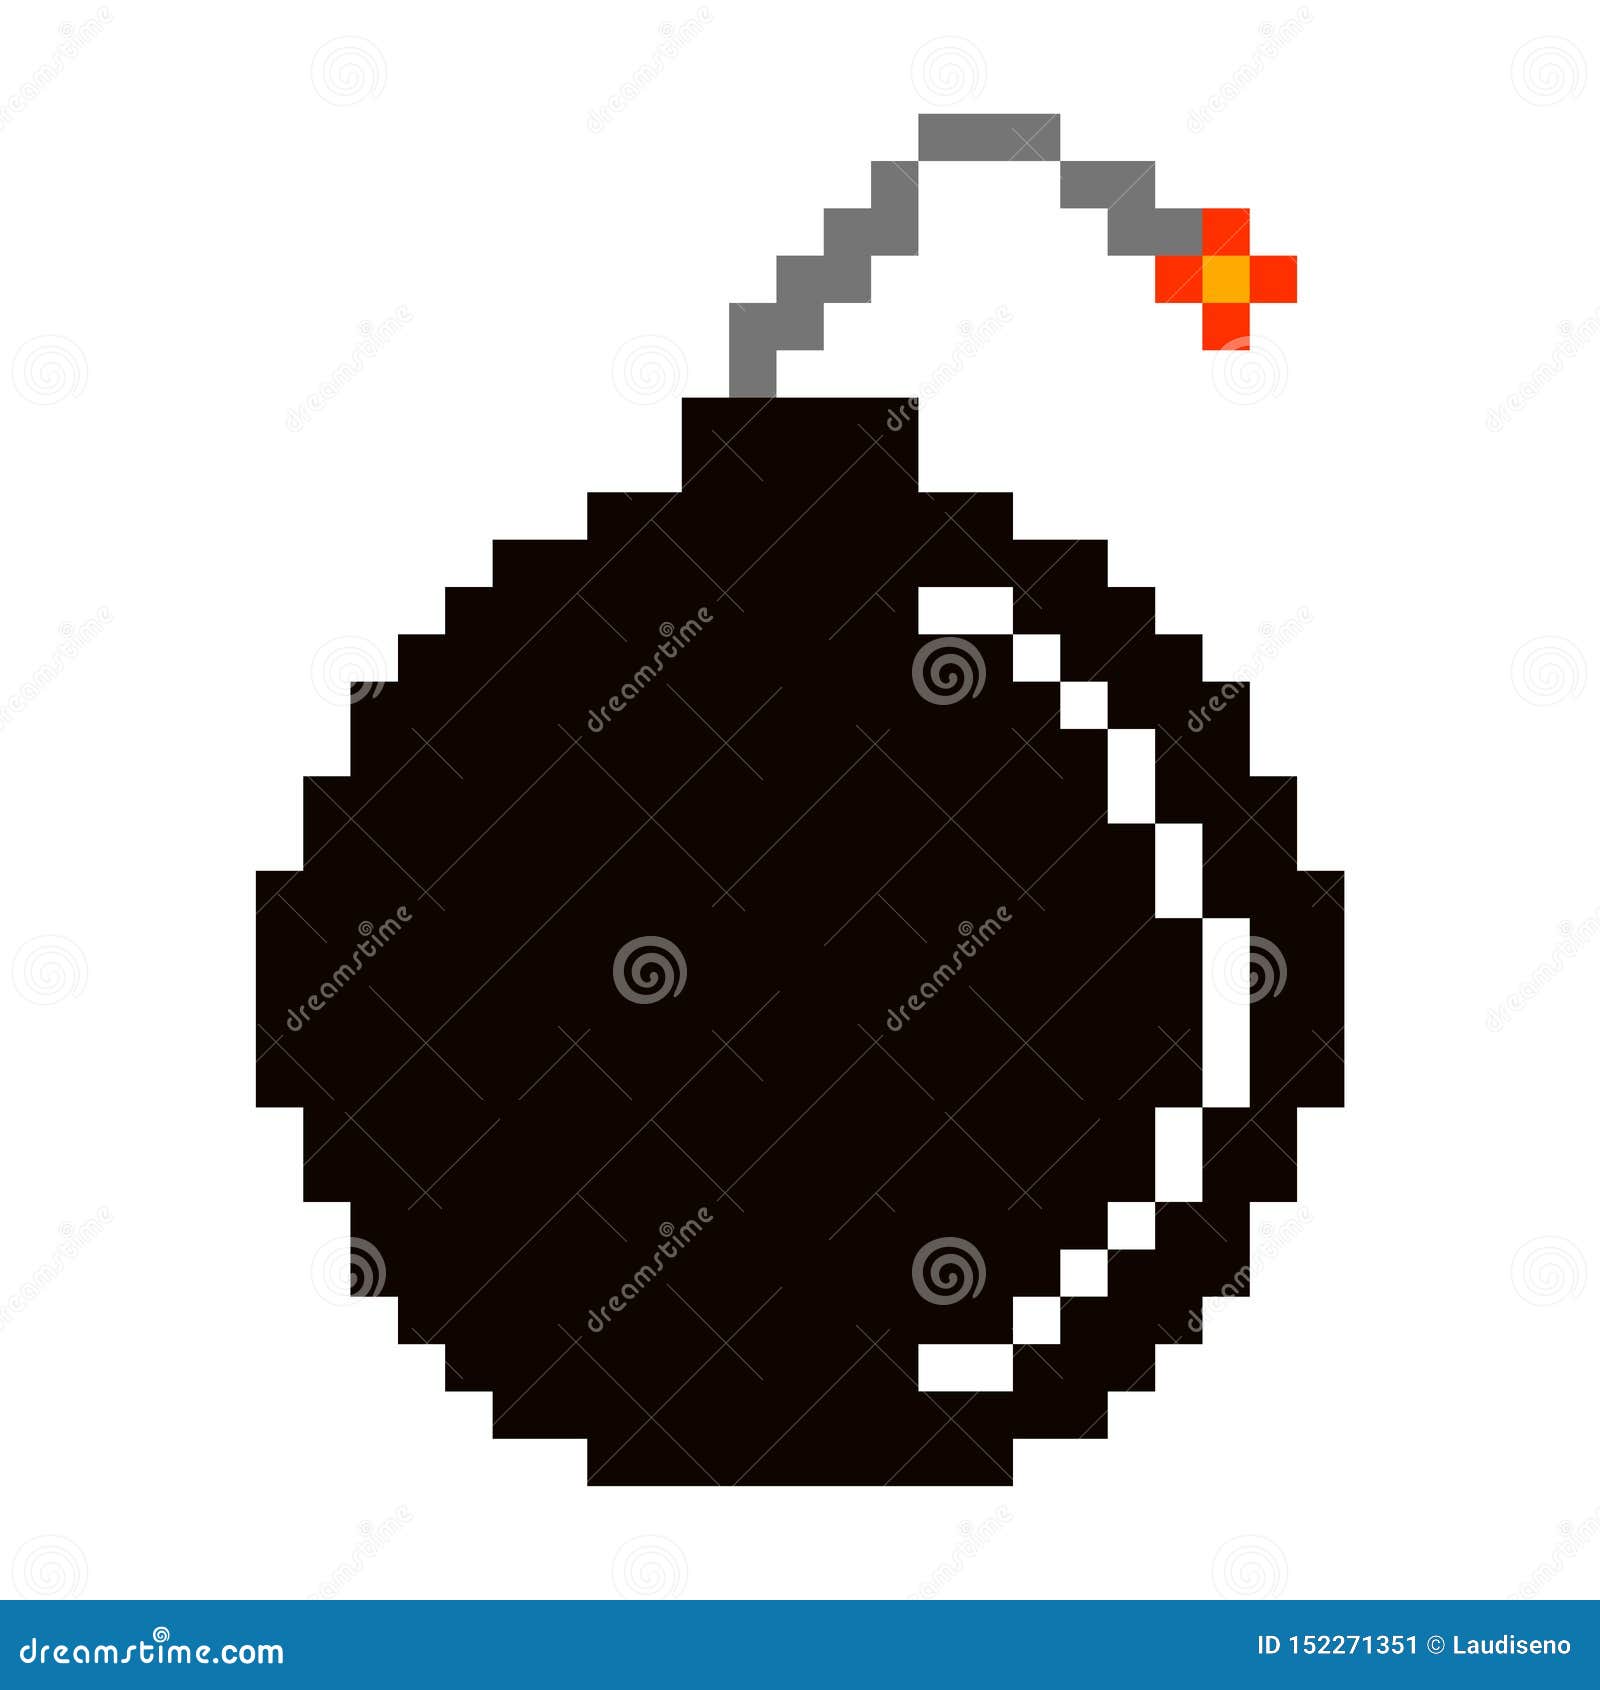  bomb cartoon pixelated icon